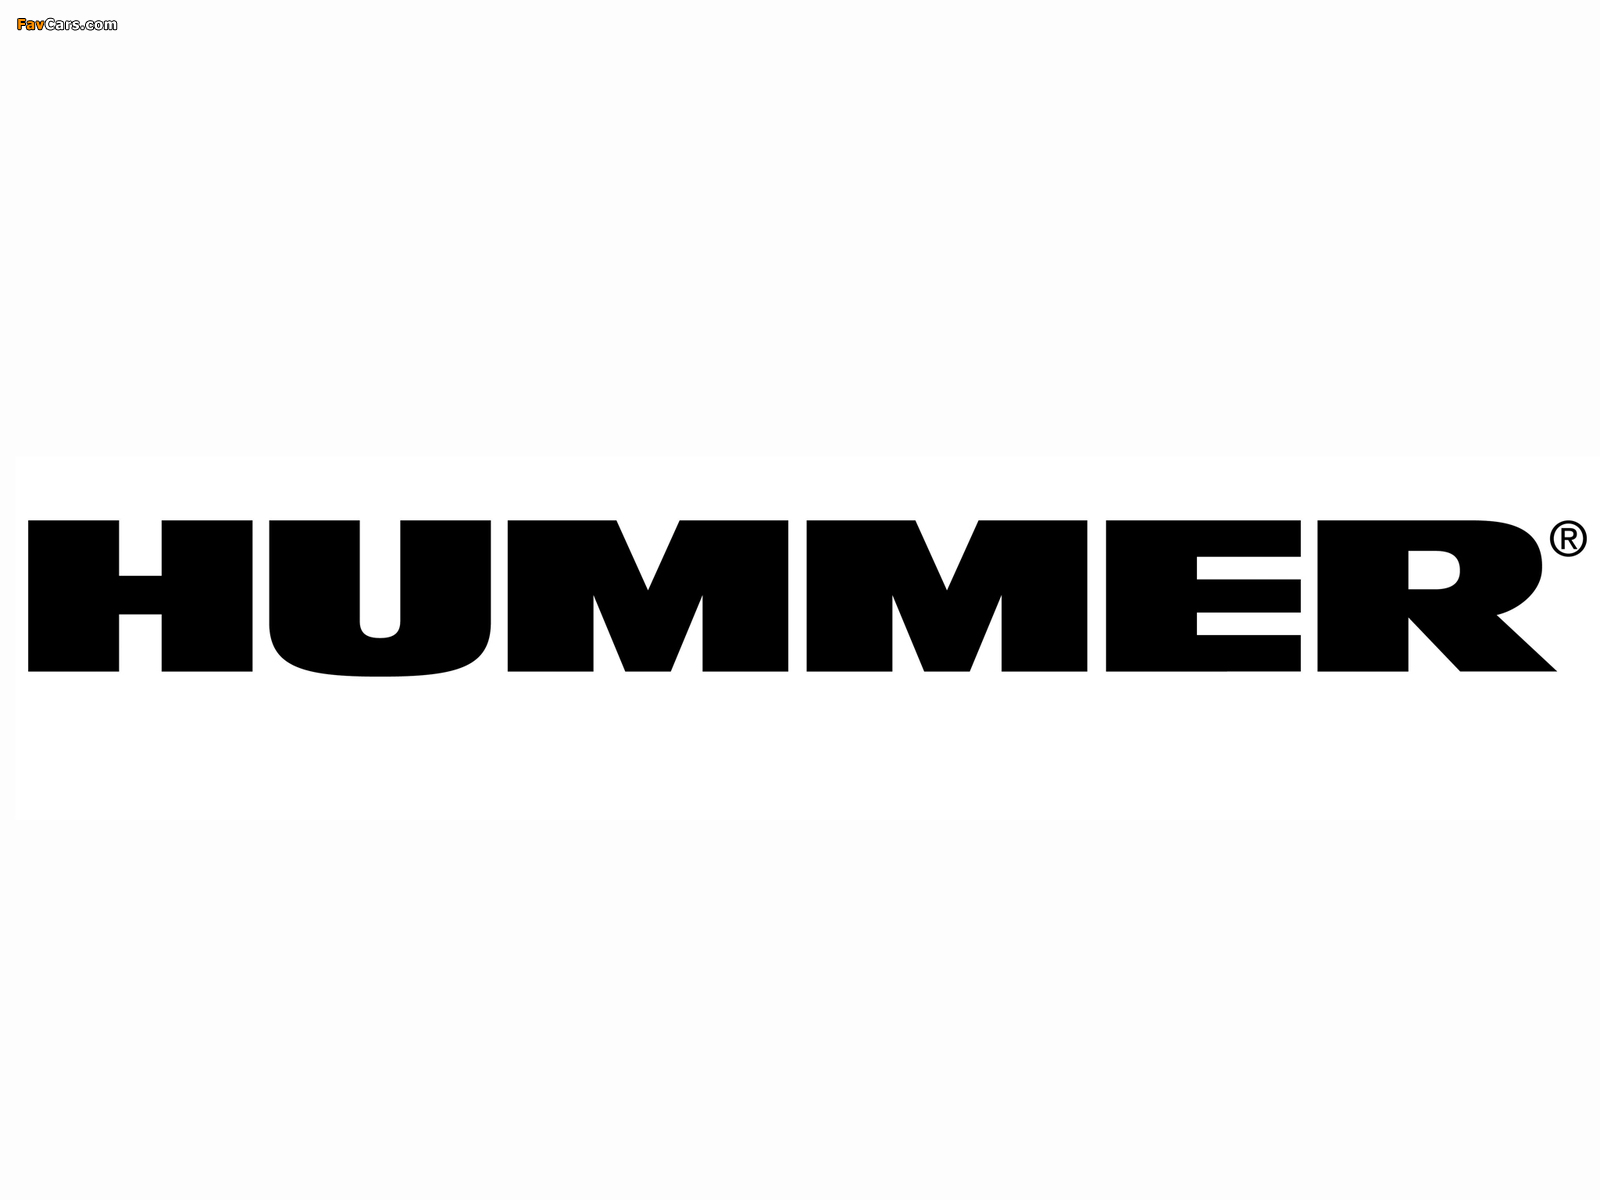 Hummer images (1600 x 1200)